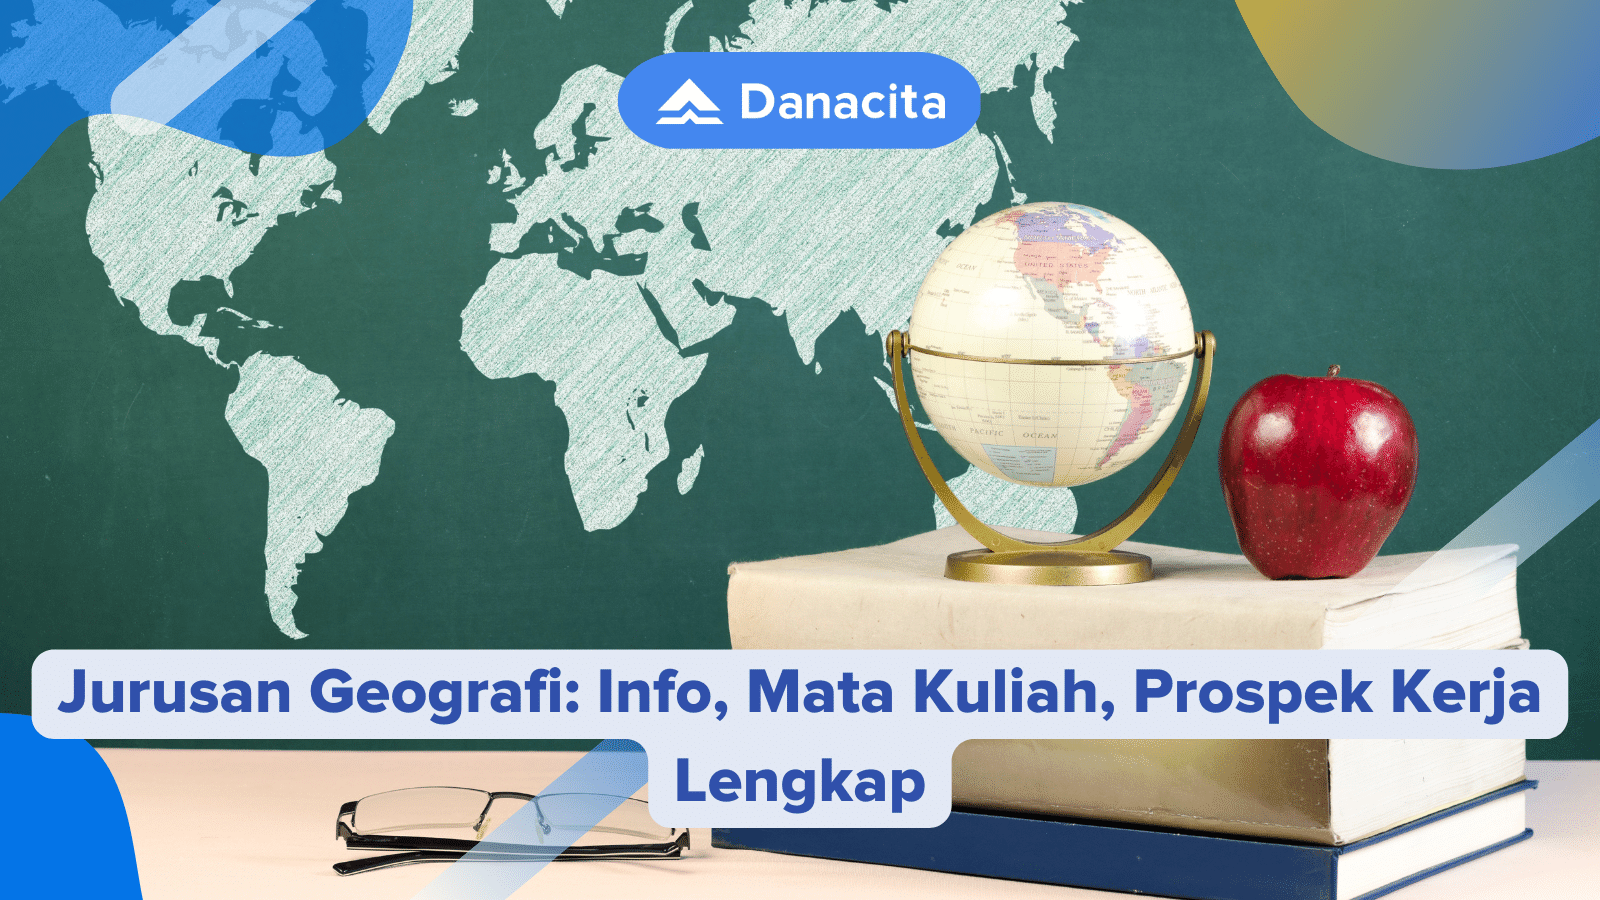 Jurusan-Geografi-Info-Mata-Kuliah-Prospek-Kerja-Lengkap-Danacita